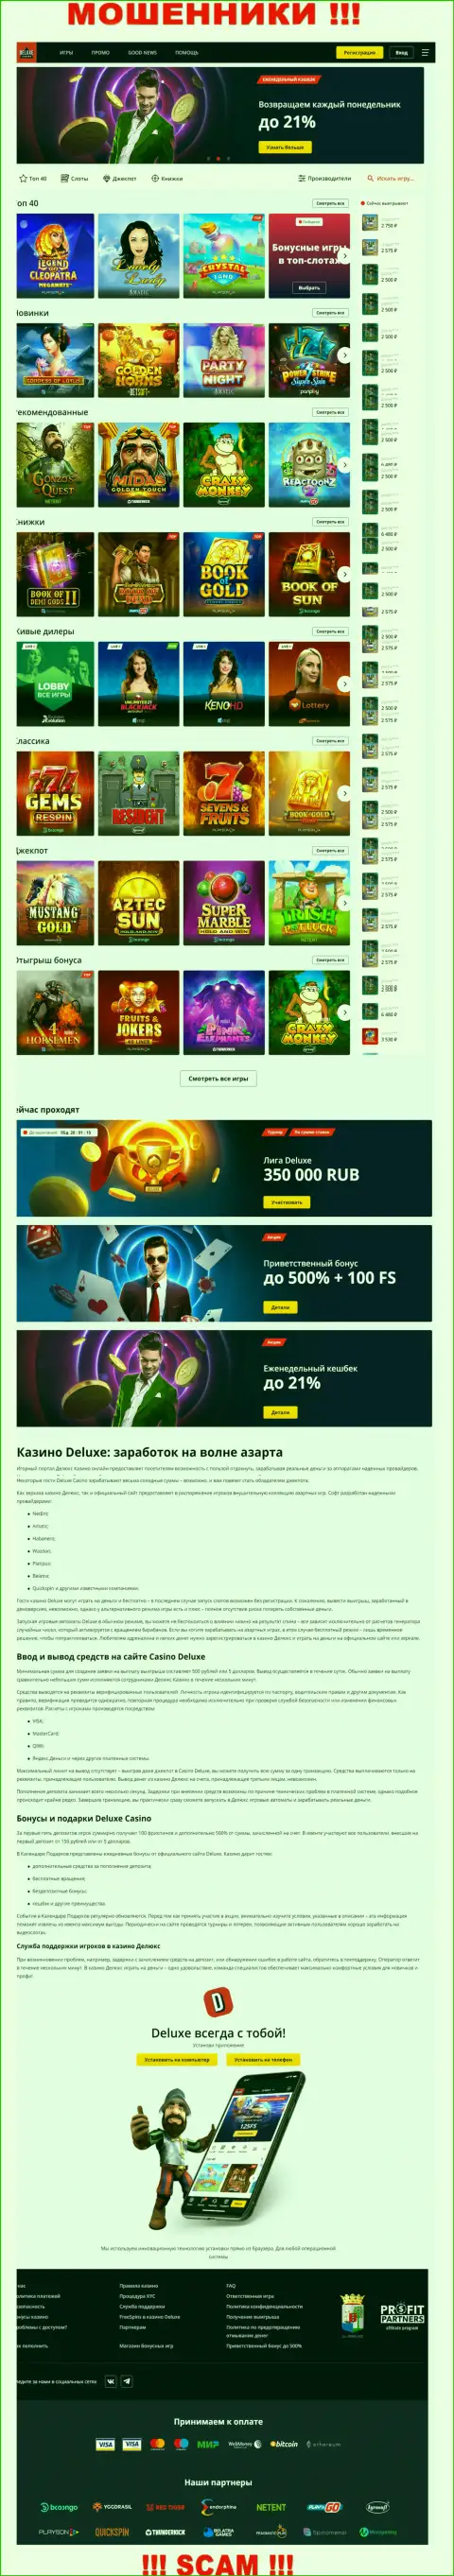 Официальная онлайн-страница конторы Deluxe Casino